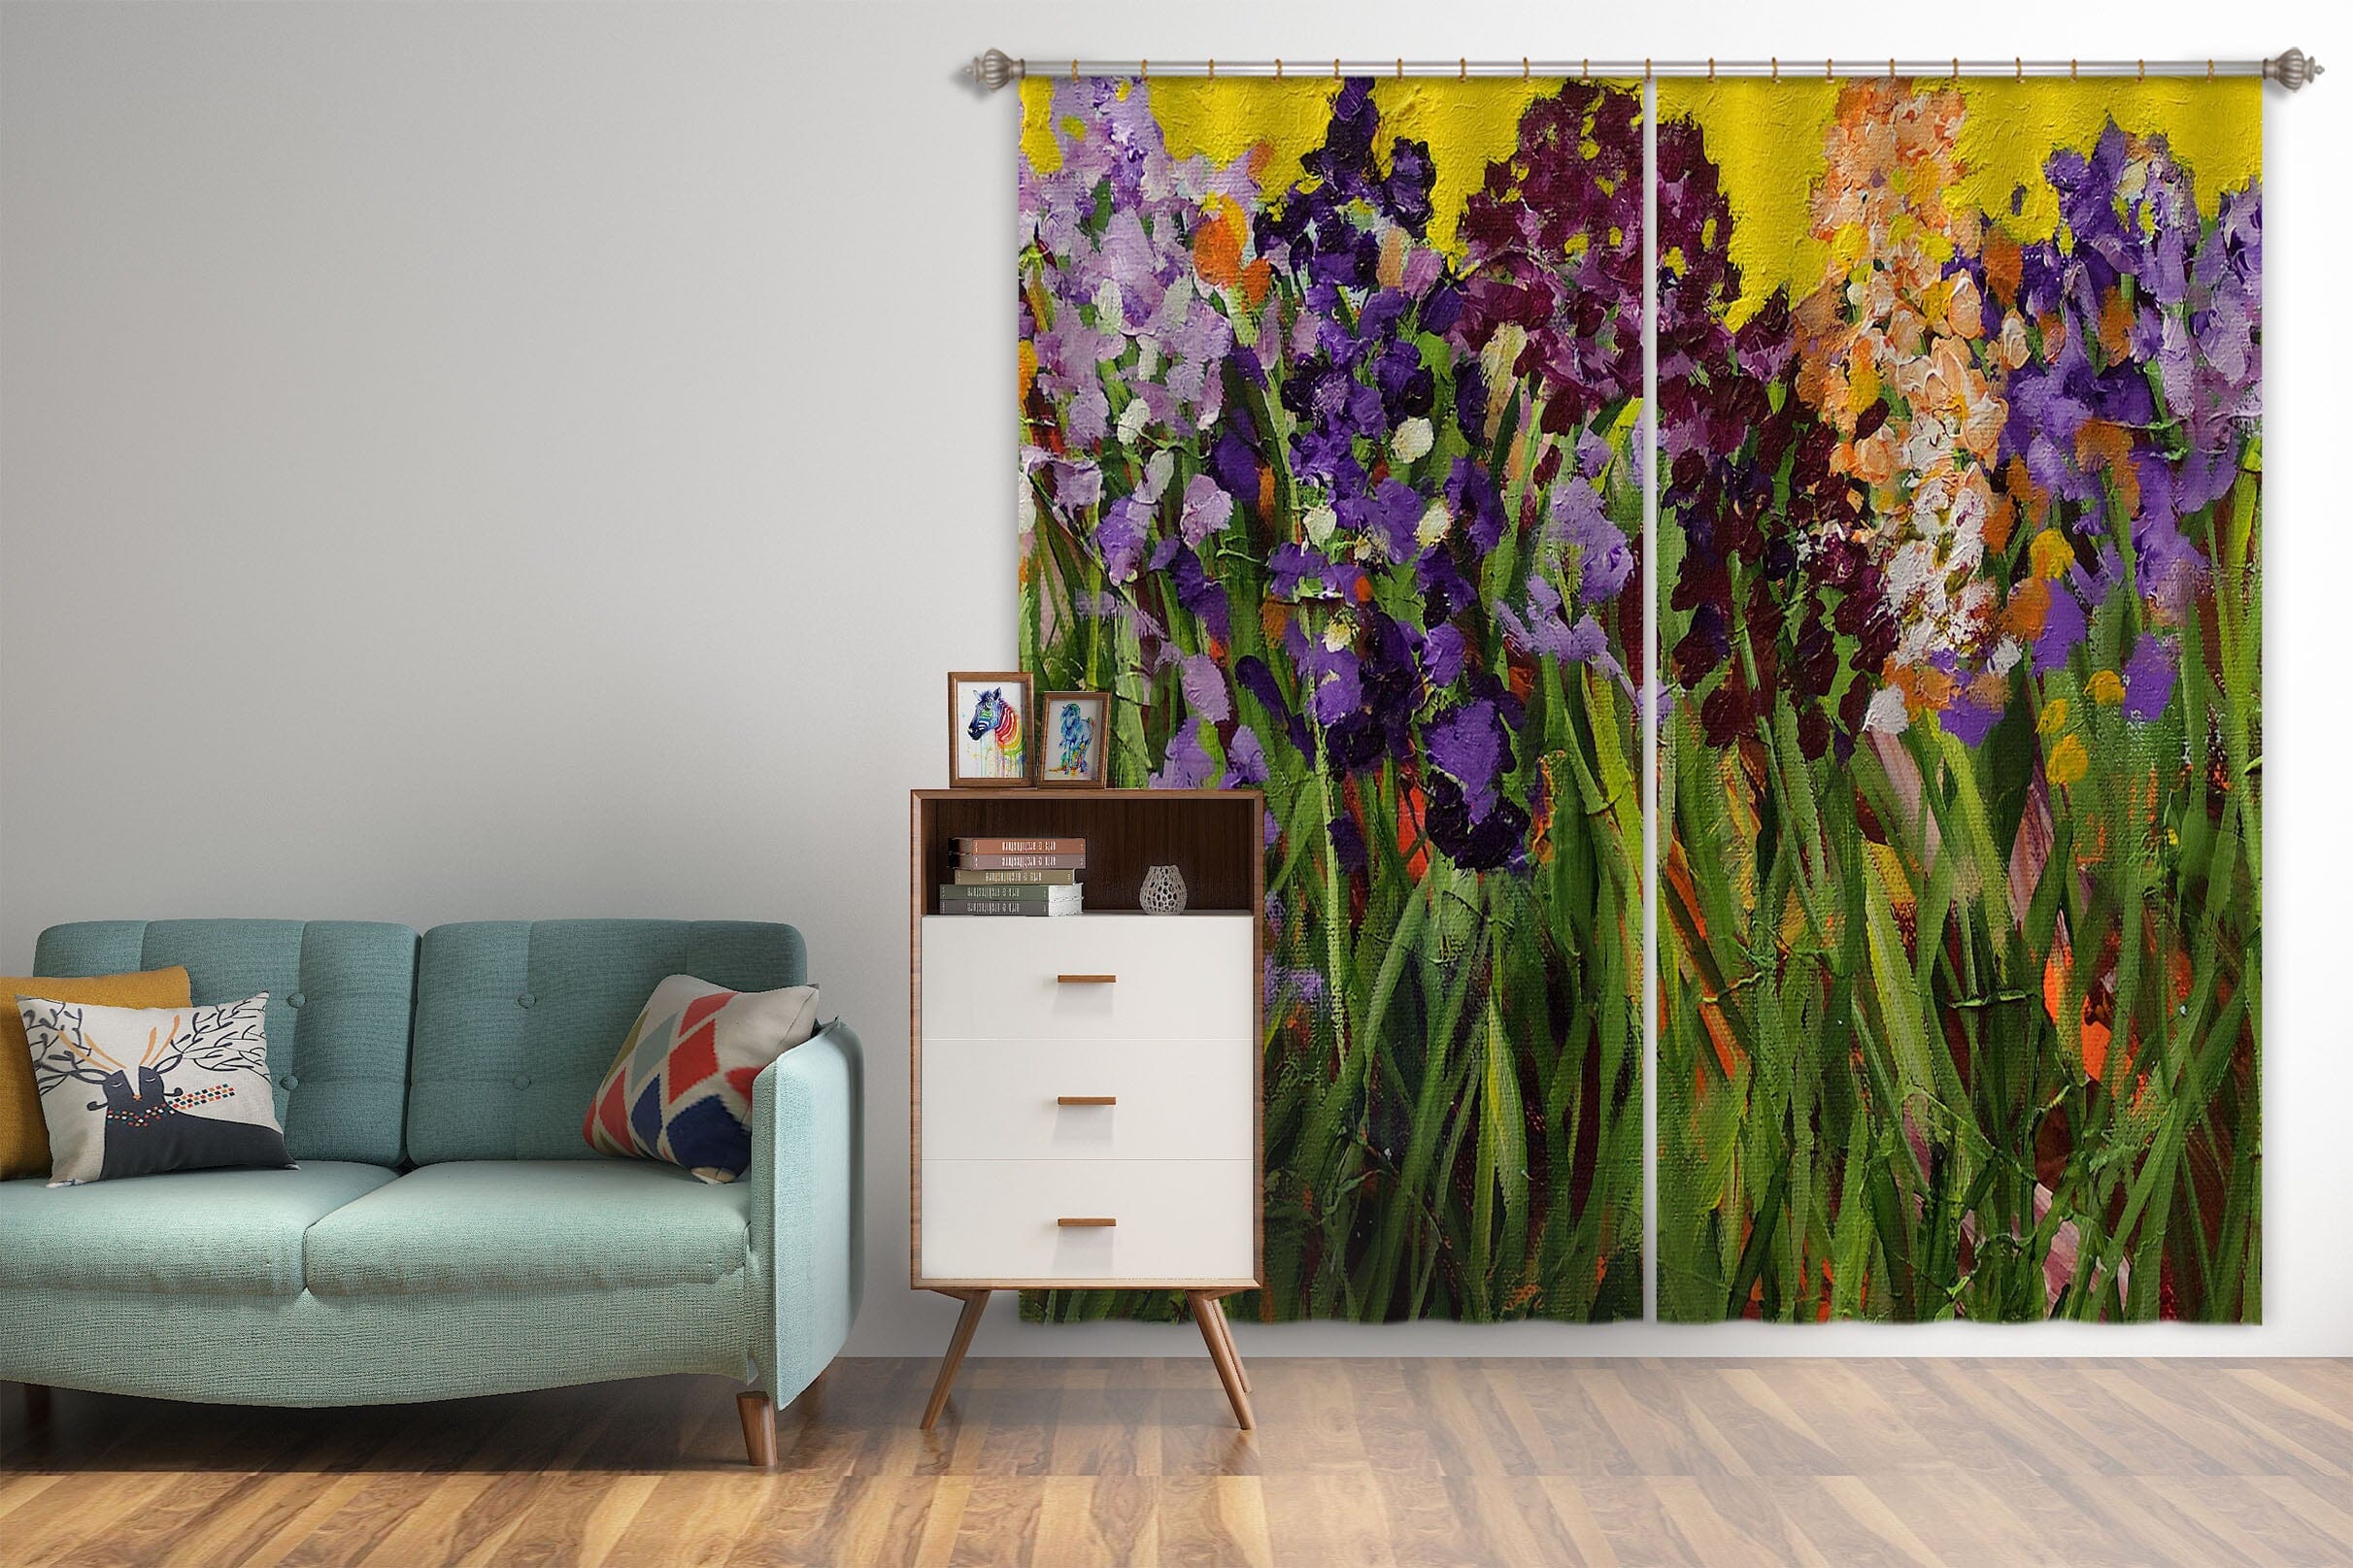 3D Purple Wild Flower 261 Allan P. Friedlander Curtain Curtains Drapes Curtains AJ Creativity Home 